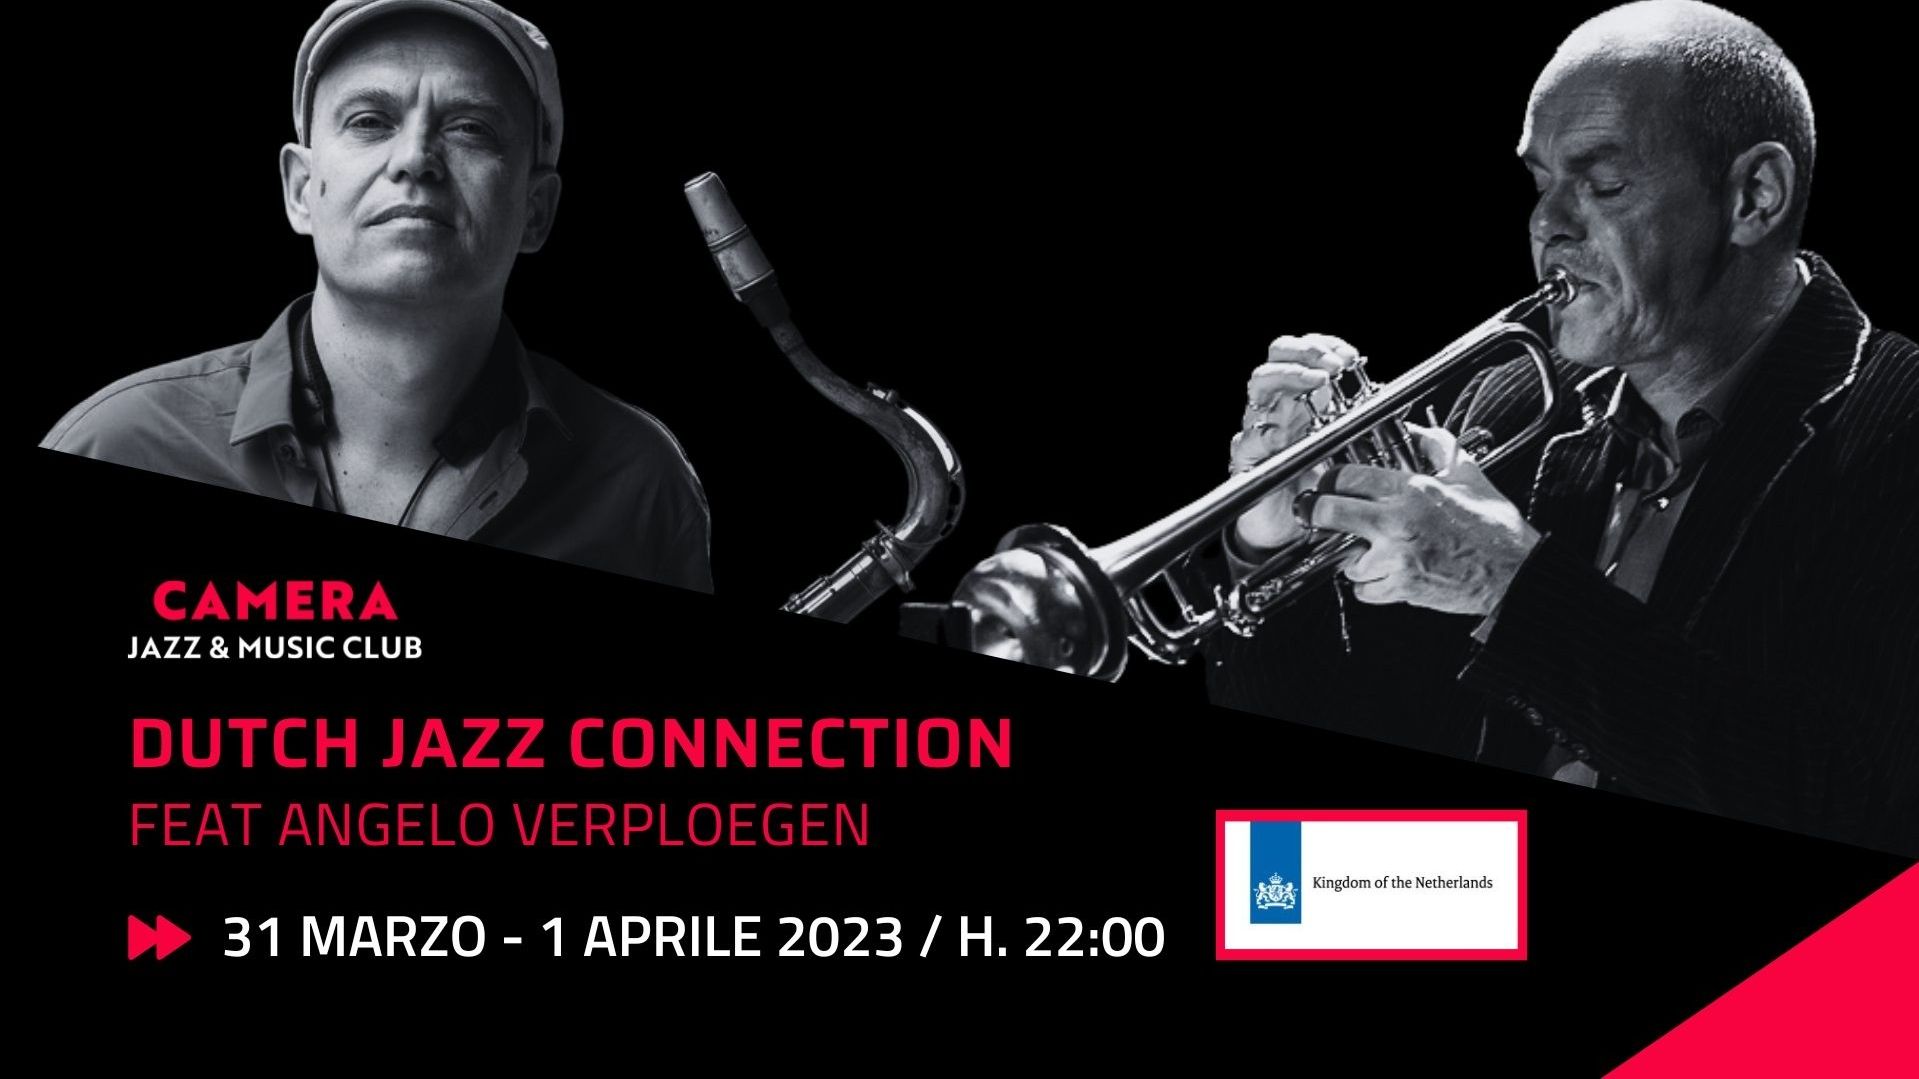 Dutch Jazz Connection “Feat Angelo Verploegen”